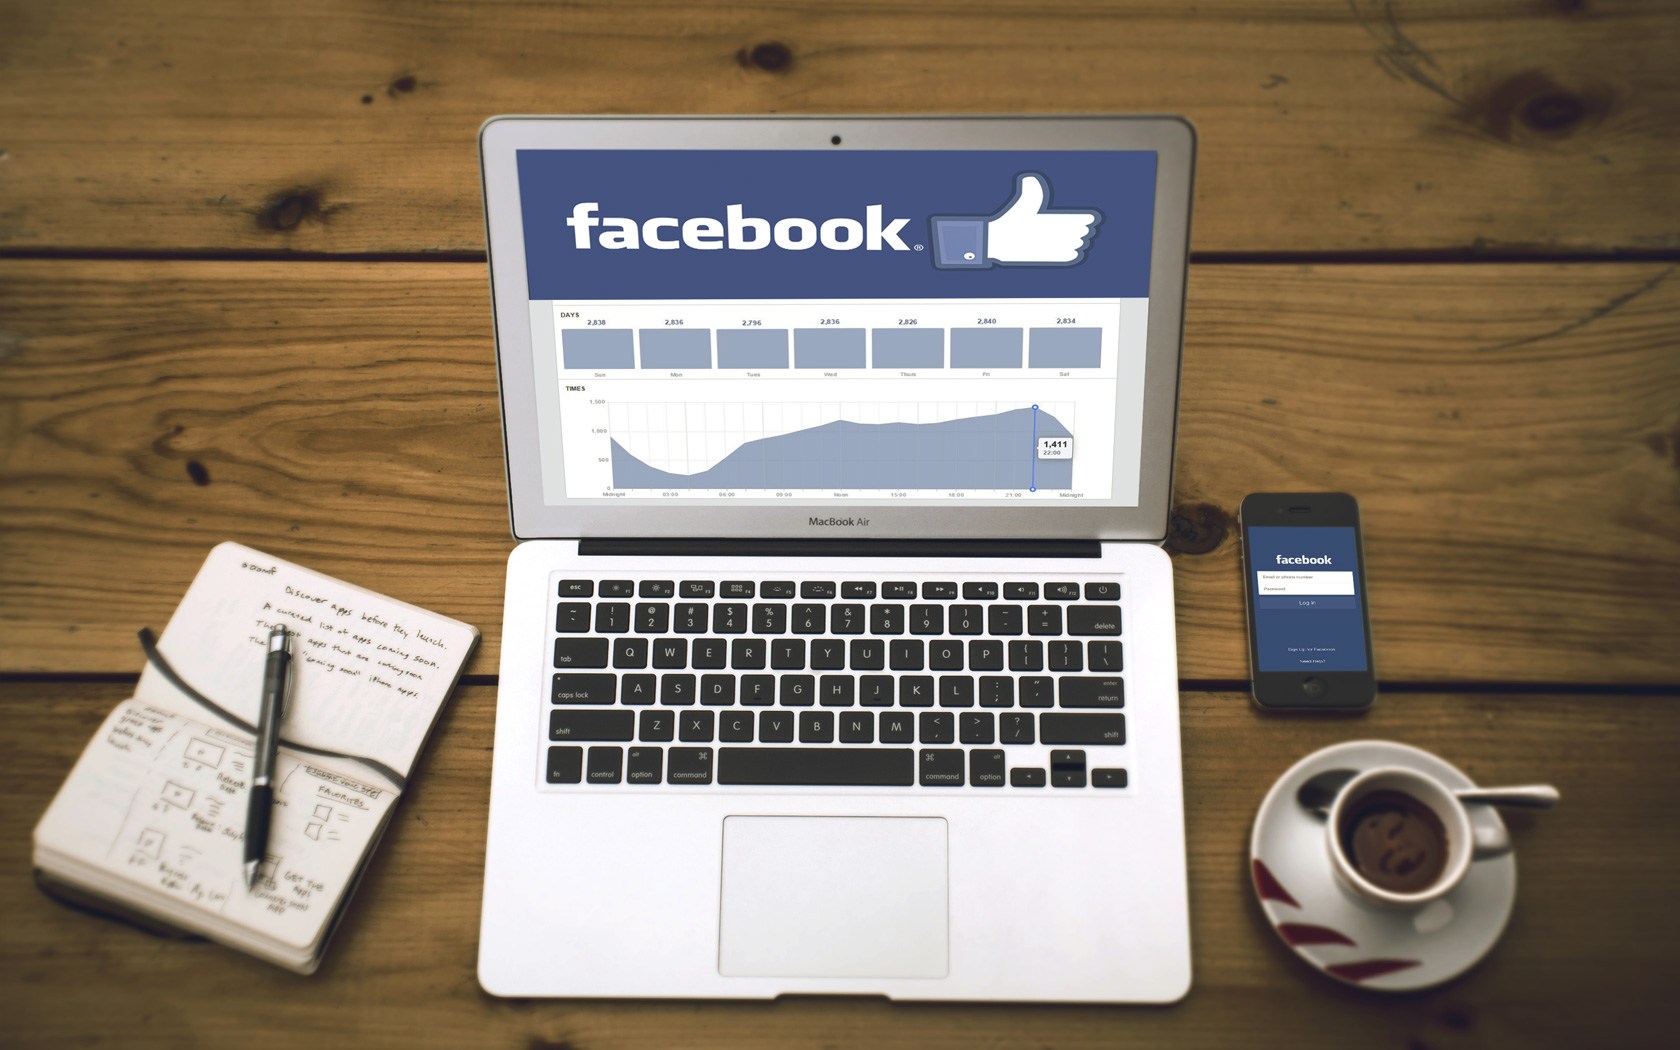 Spm - Facebook Marketing , HD Wallpaper & Backgrounds